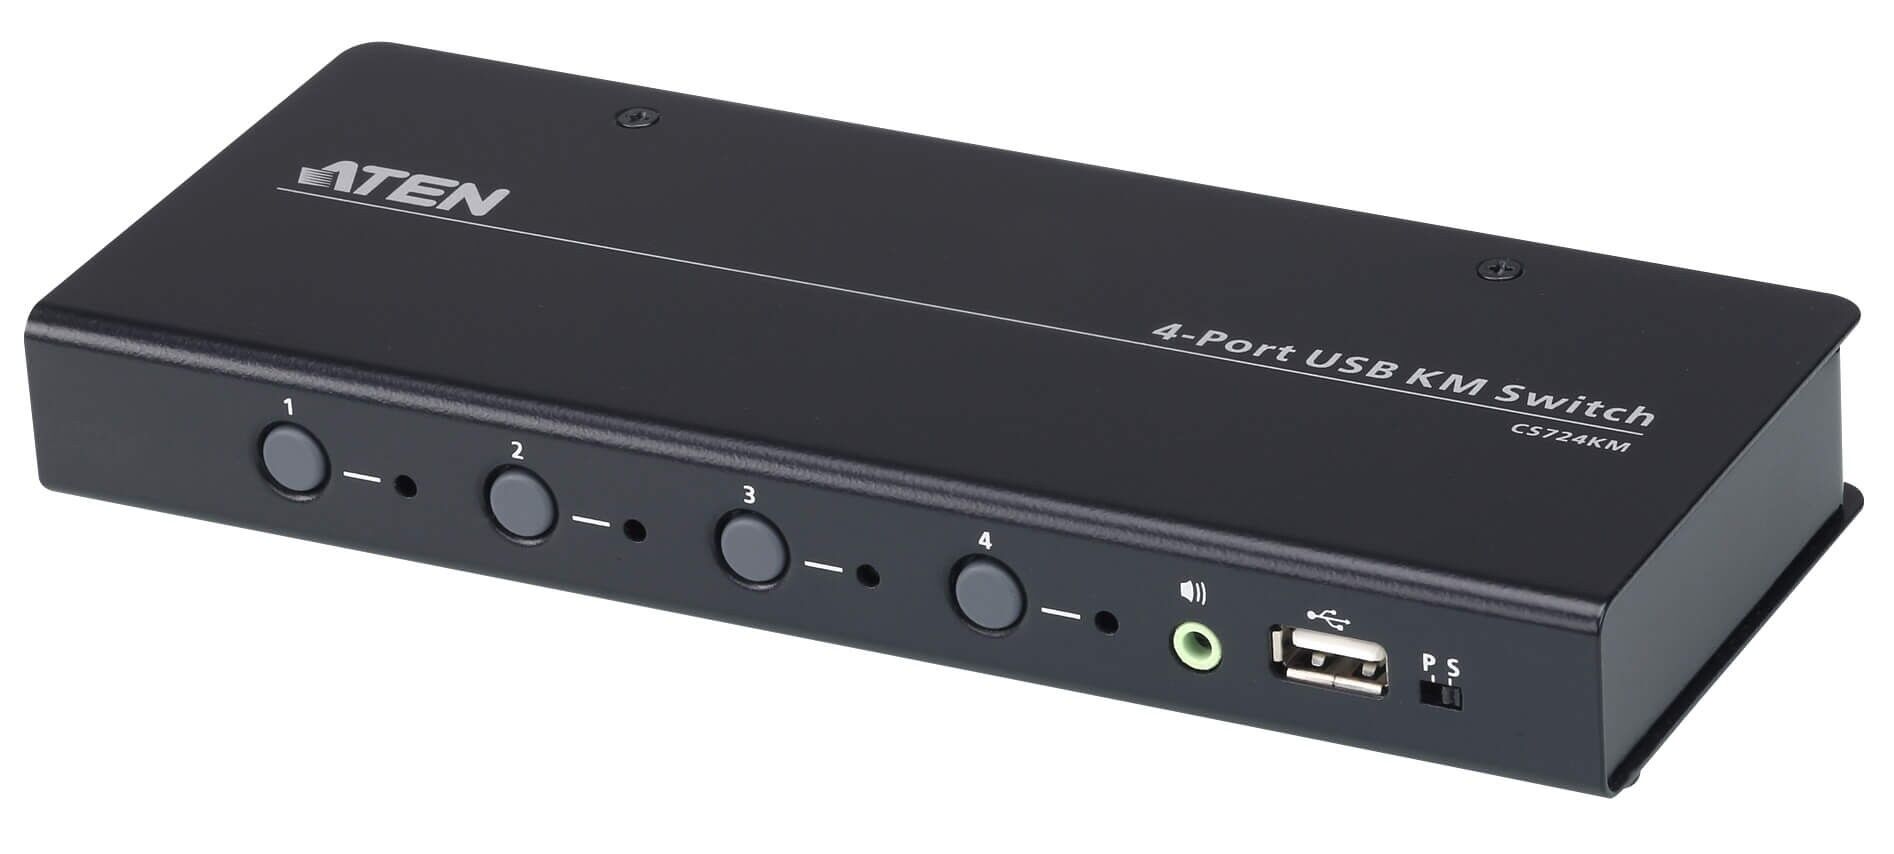 Aten Switch KM USB a 4 porte illimitato con Cavi, CS724KM